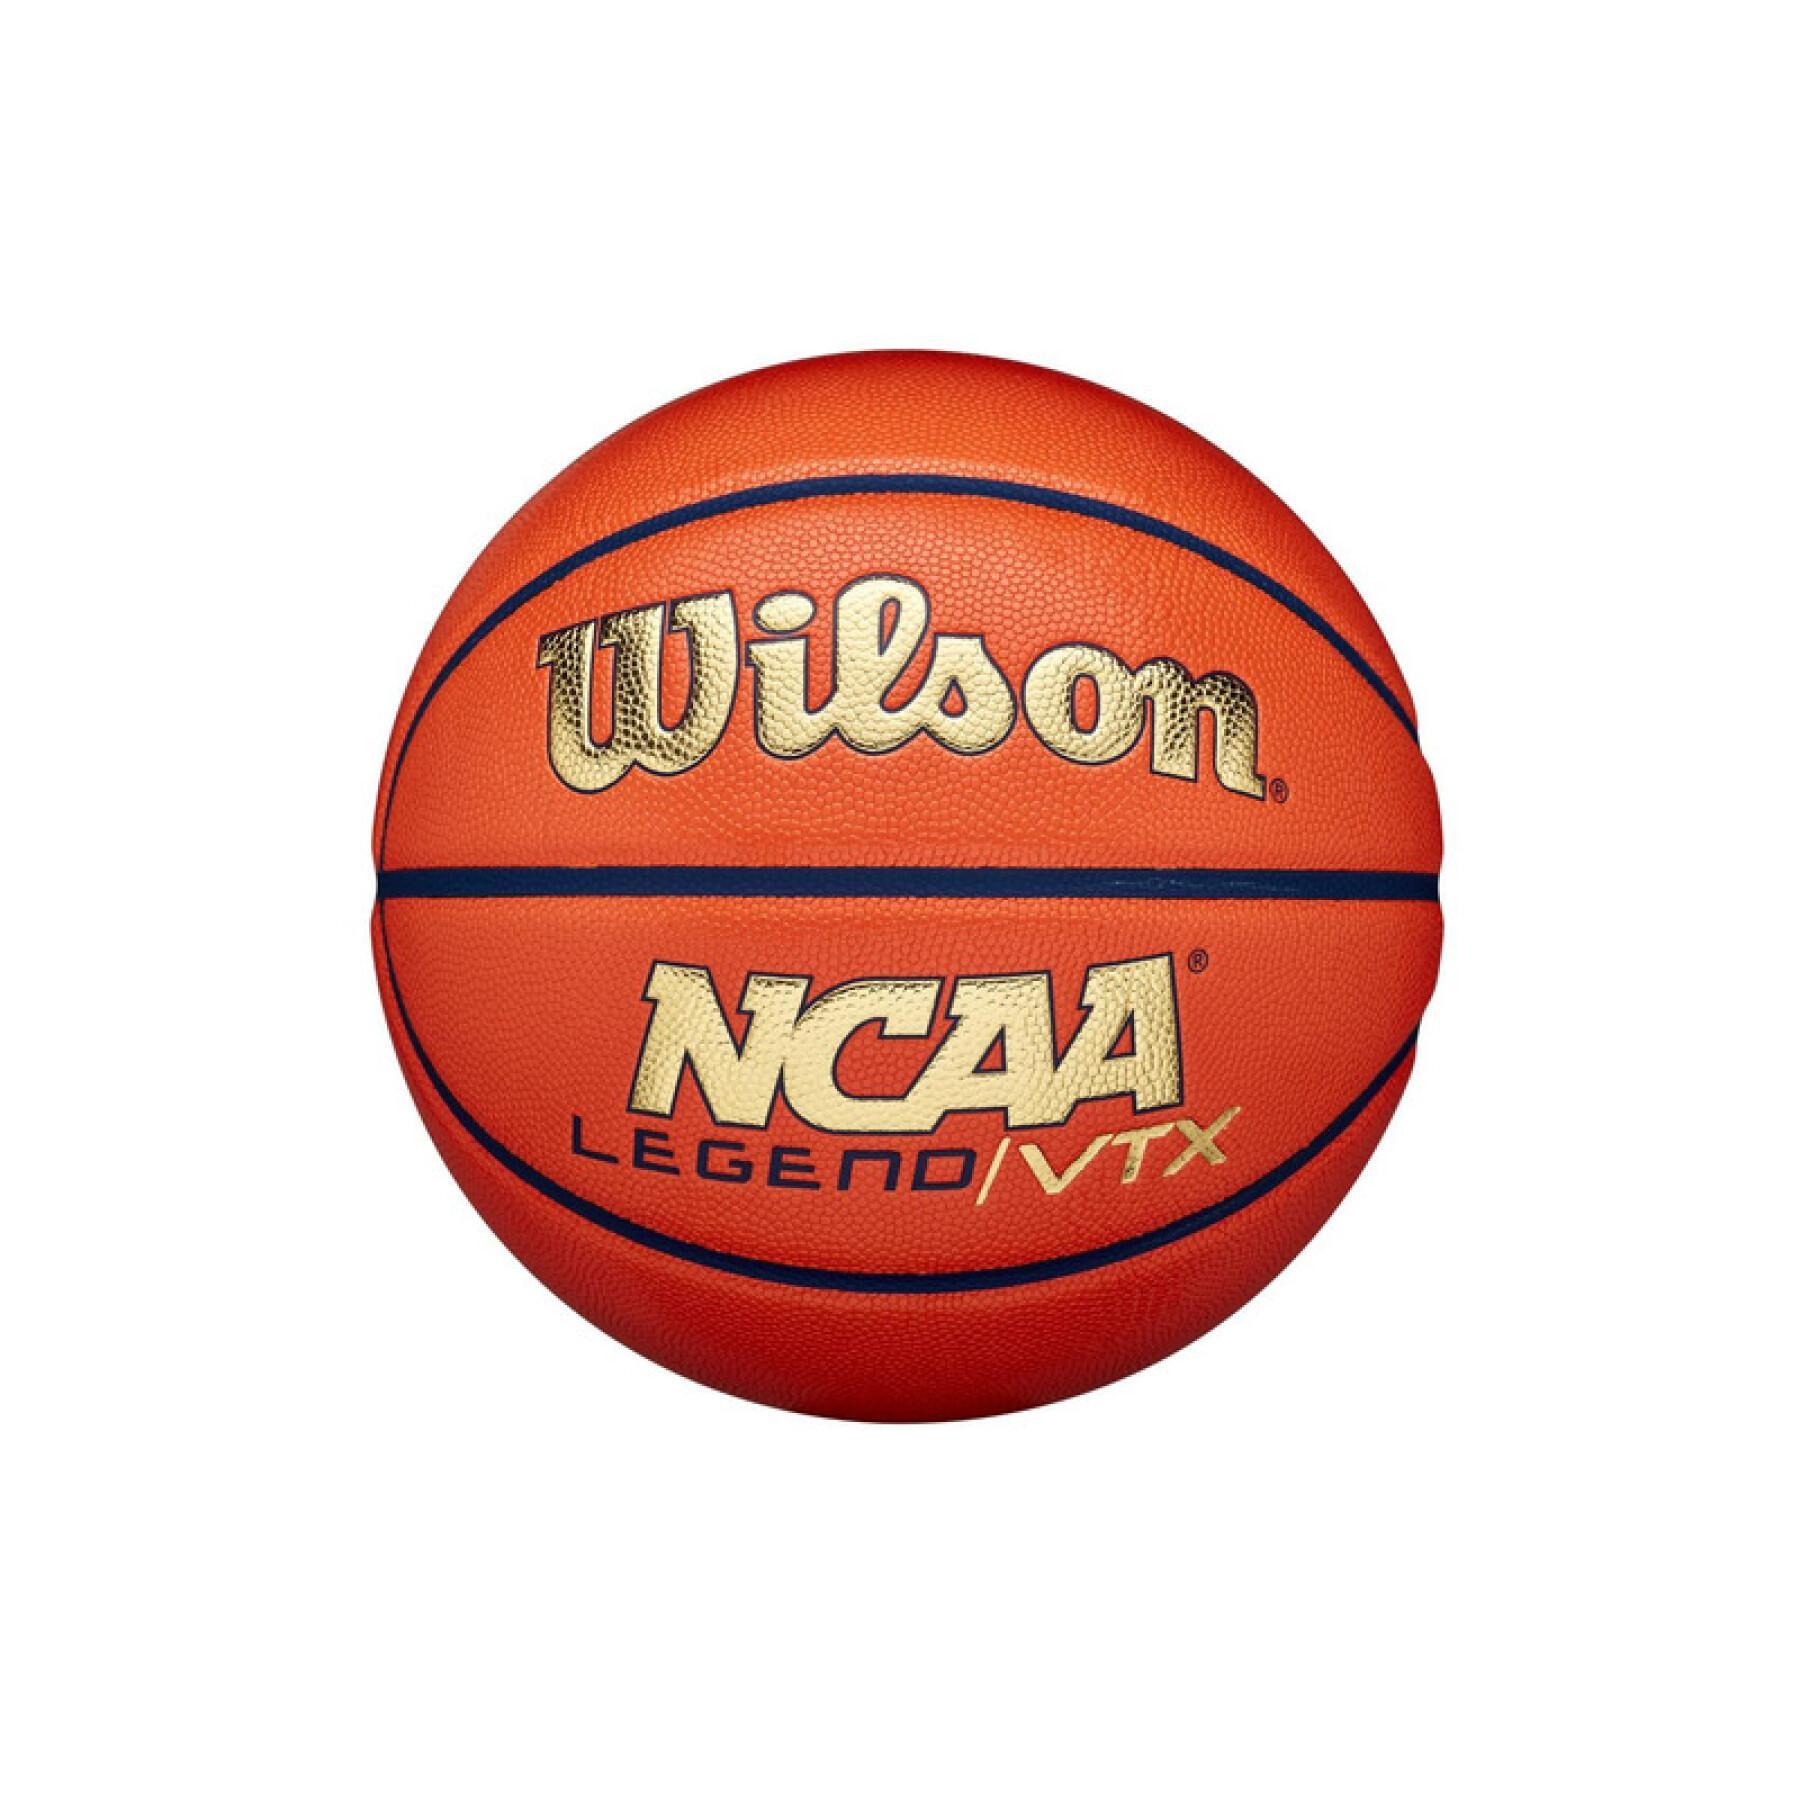 Ballon NCAA Legend Vtx